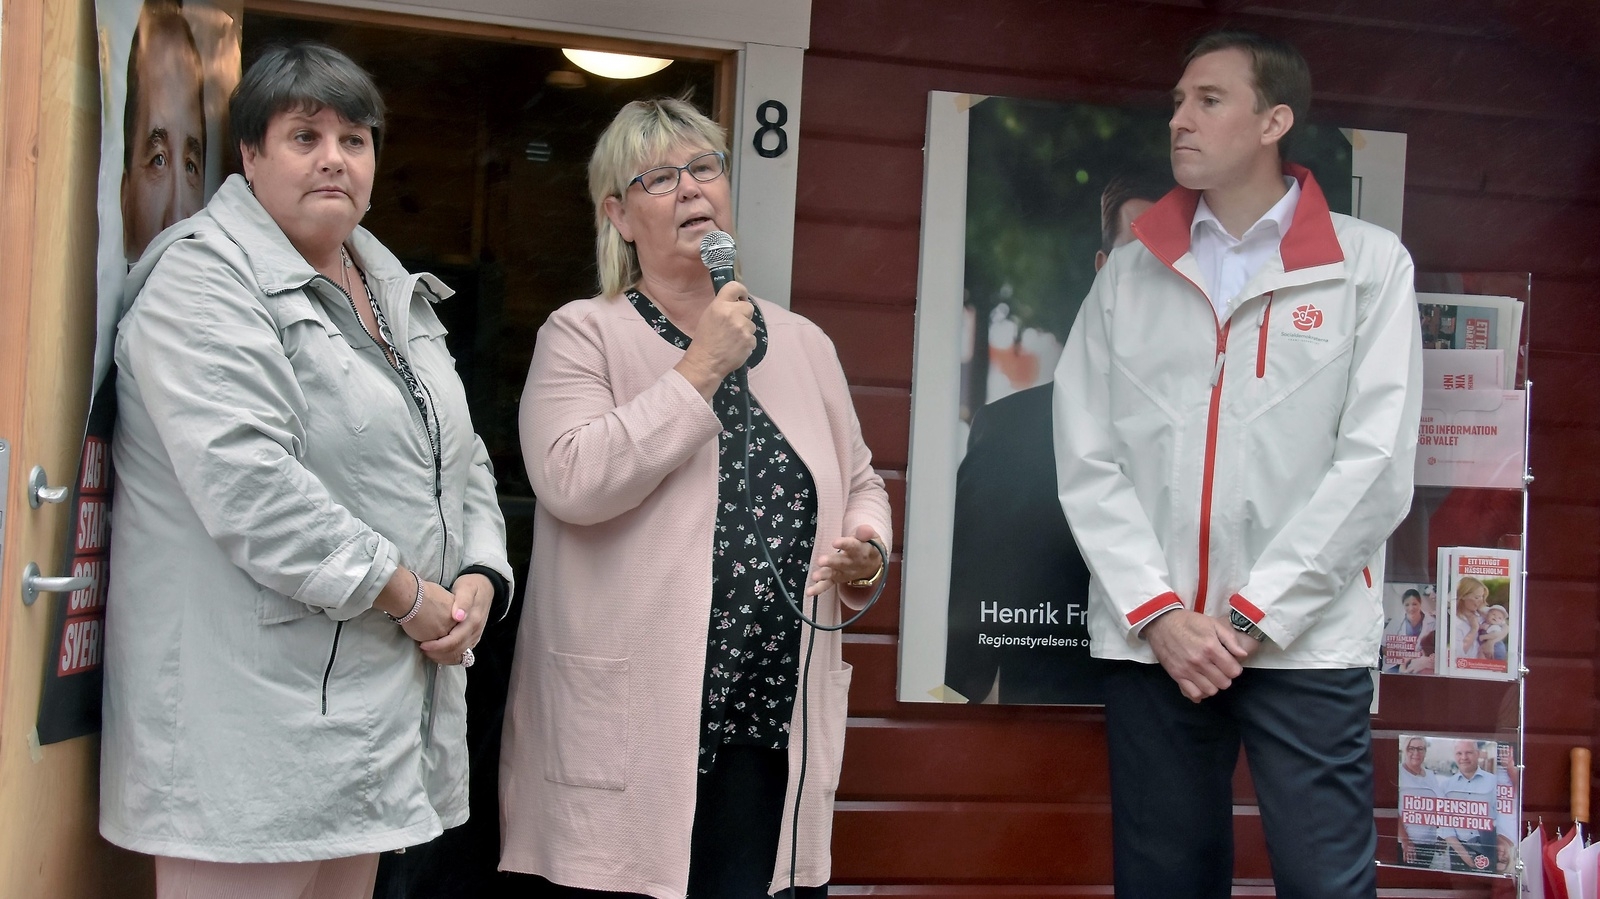 Irene Nilsson, Lena Wallentheim och Henrik Fritzon invigde Socialdemokraternas valstuga. Foto: Helén Fingalsson